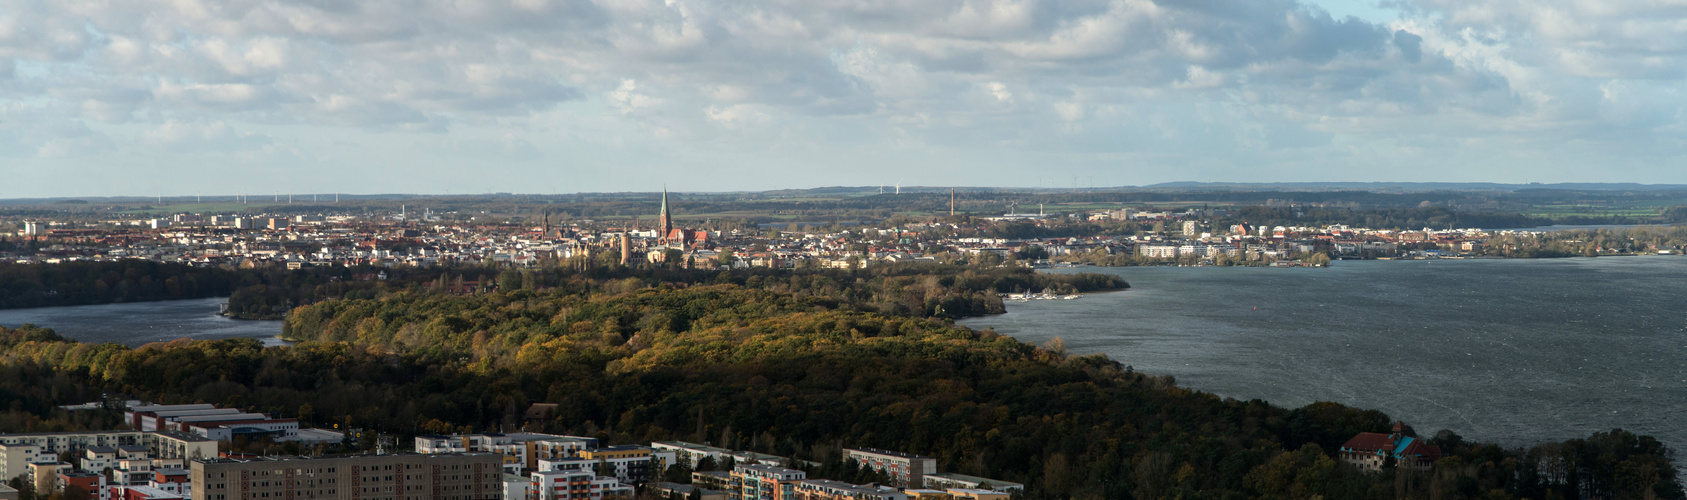 Schwerin - Stadt der sieben Seen